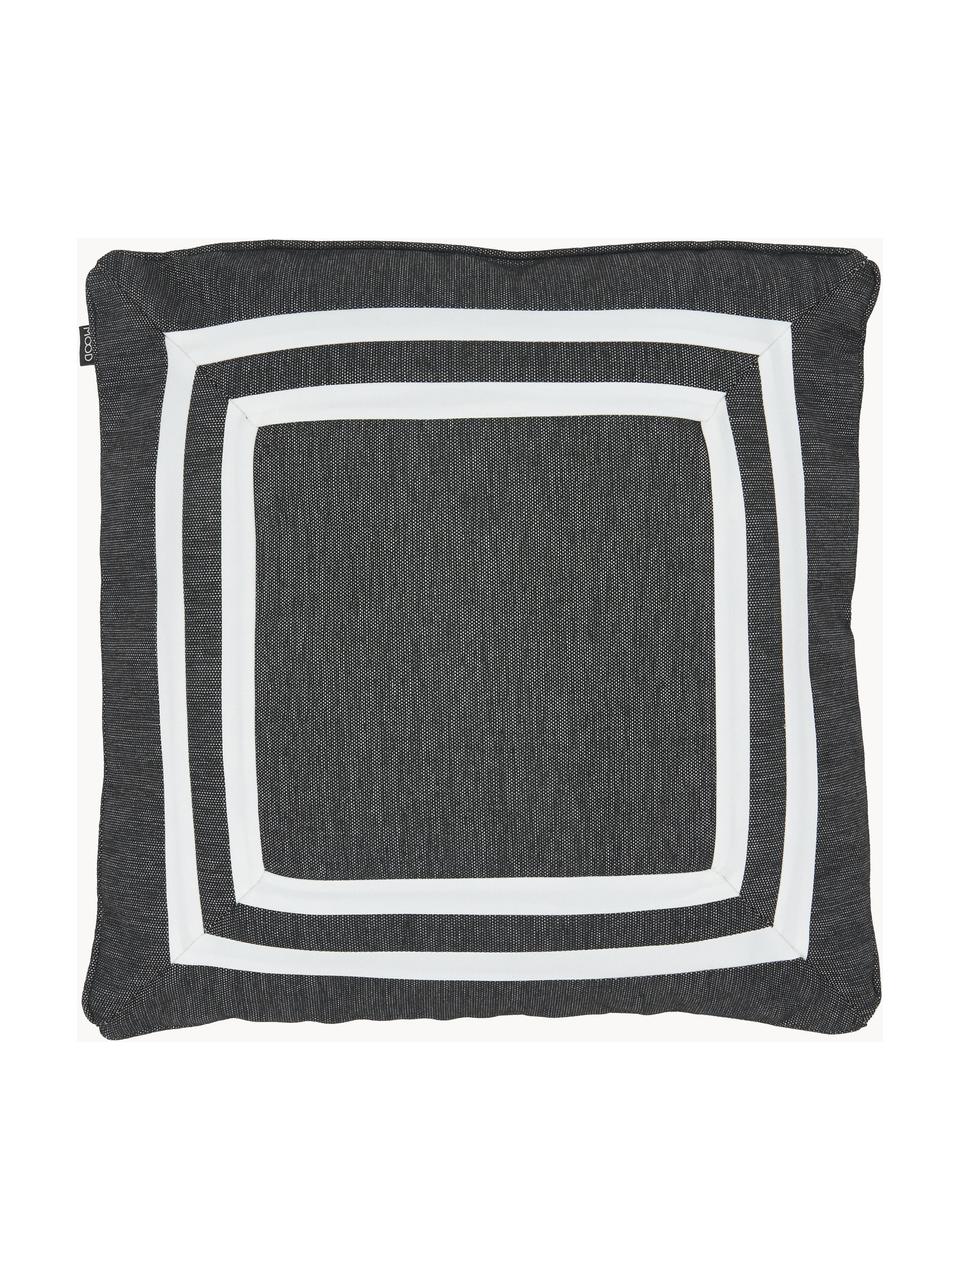 Poszewka na poduszkę Arte, 100% poliester, Czarny, biały, S 45 x D 45 cm